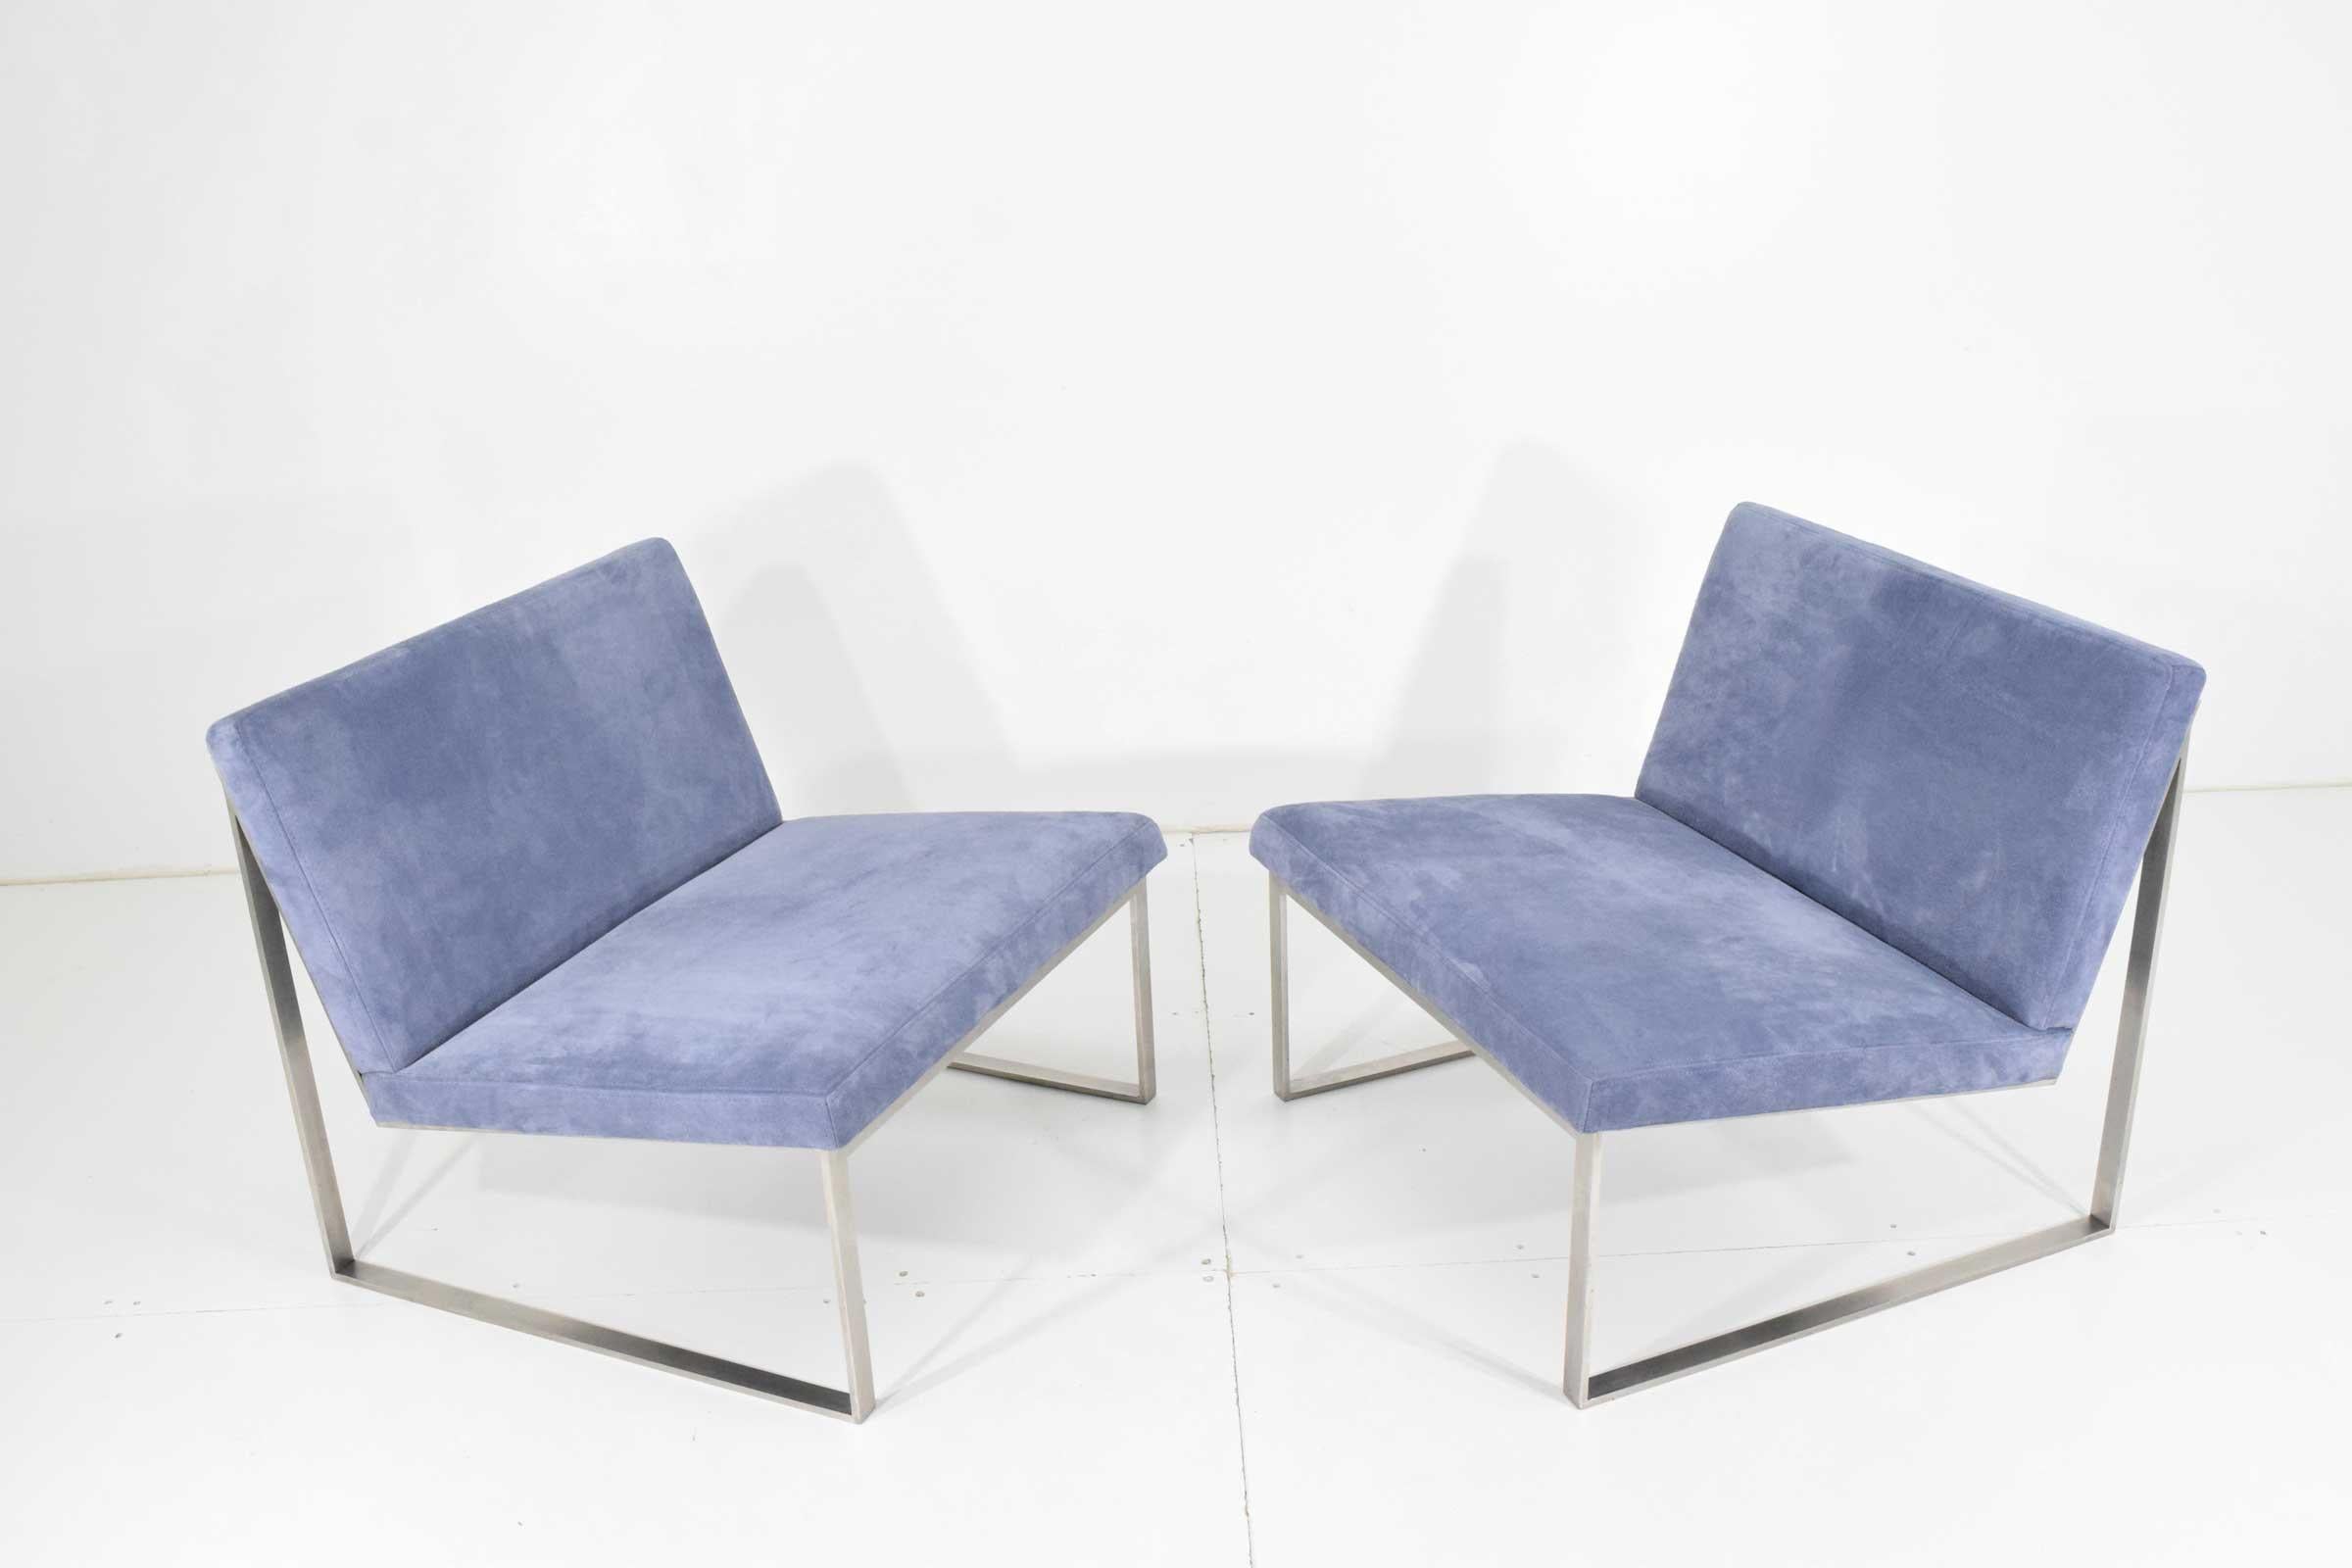 Ein Paar Bernhardt Lounge Chairs von Fabien Baron in Holly Hunt Suede (20. Jahrhundert)